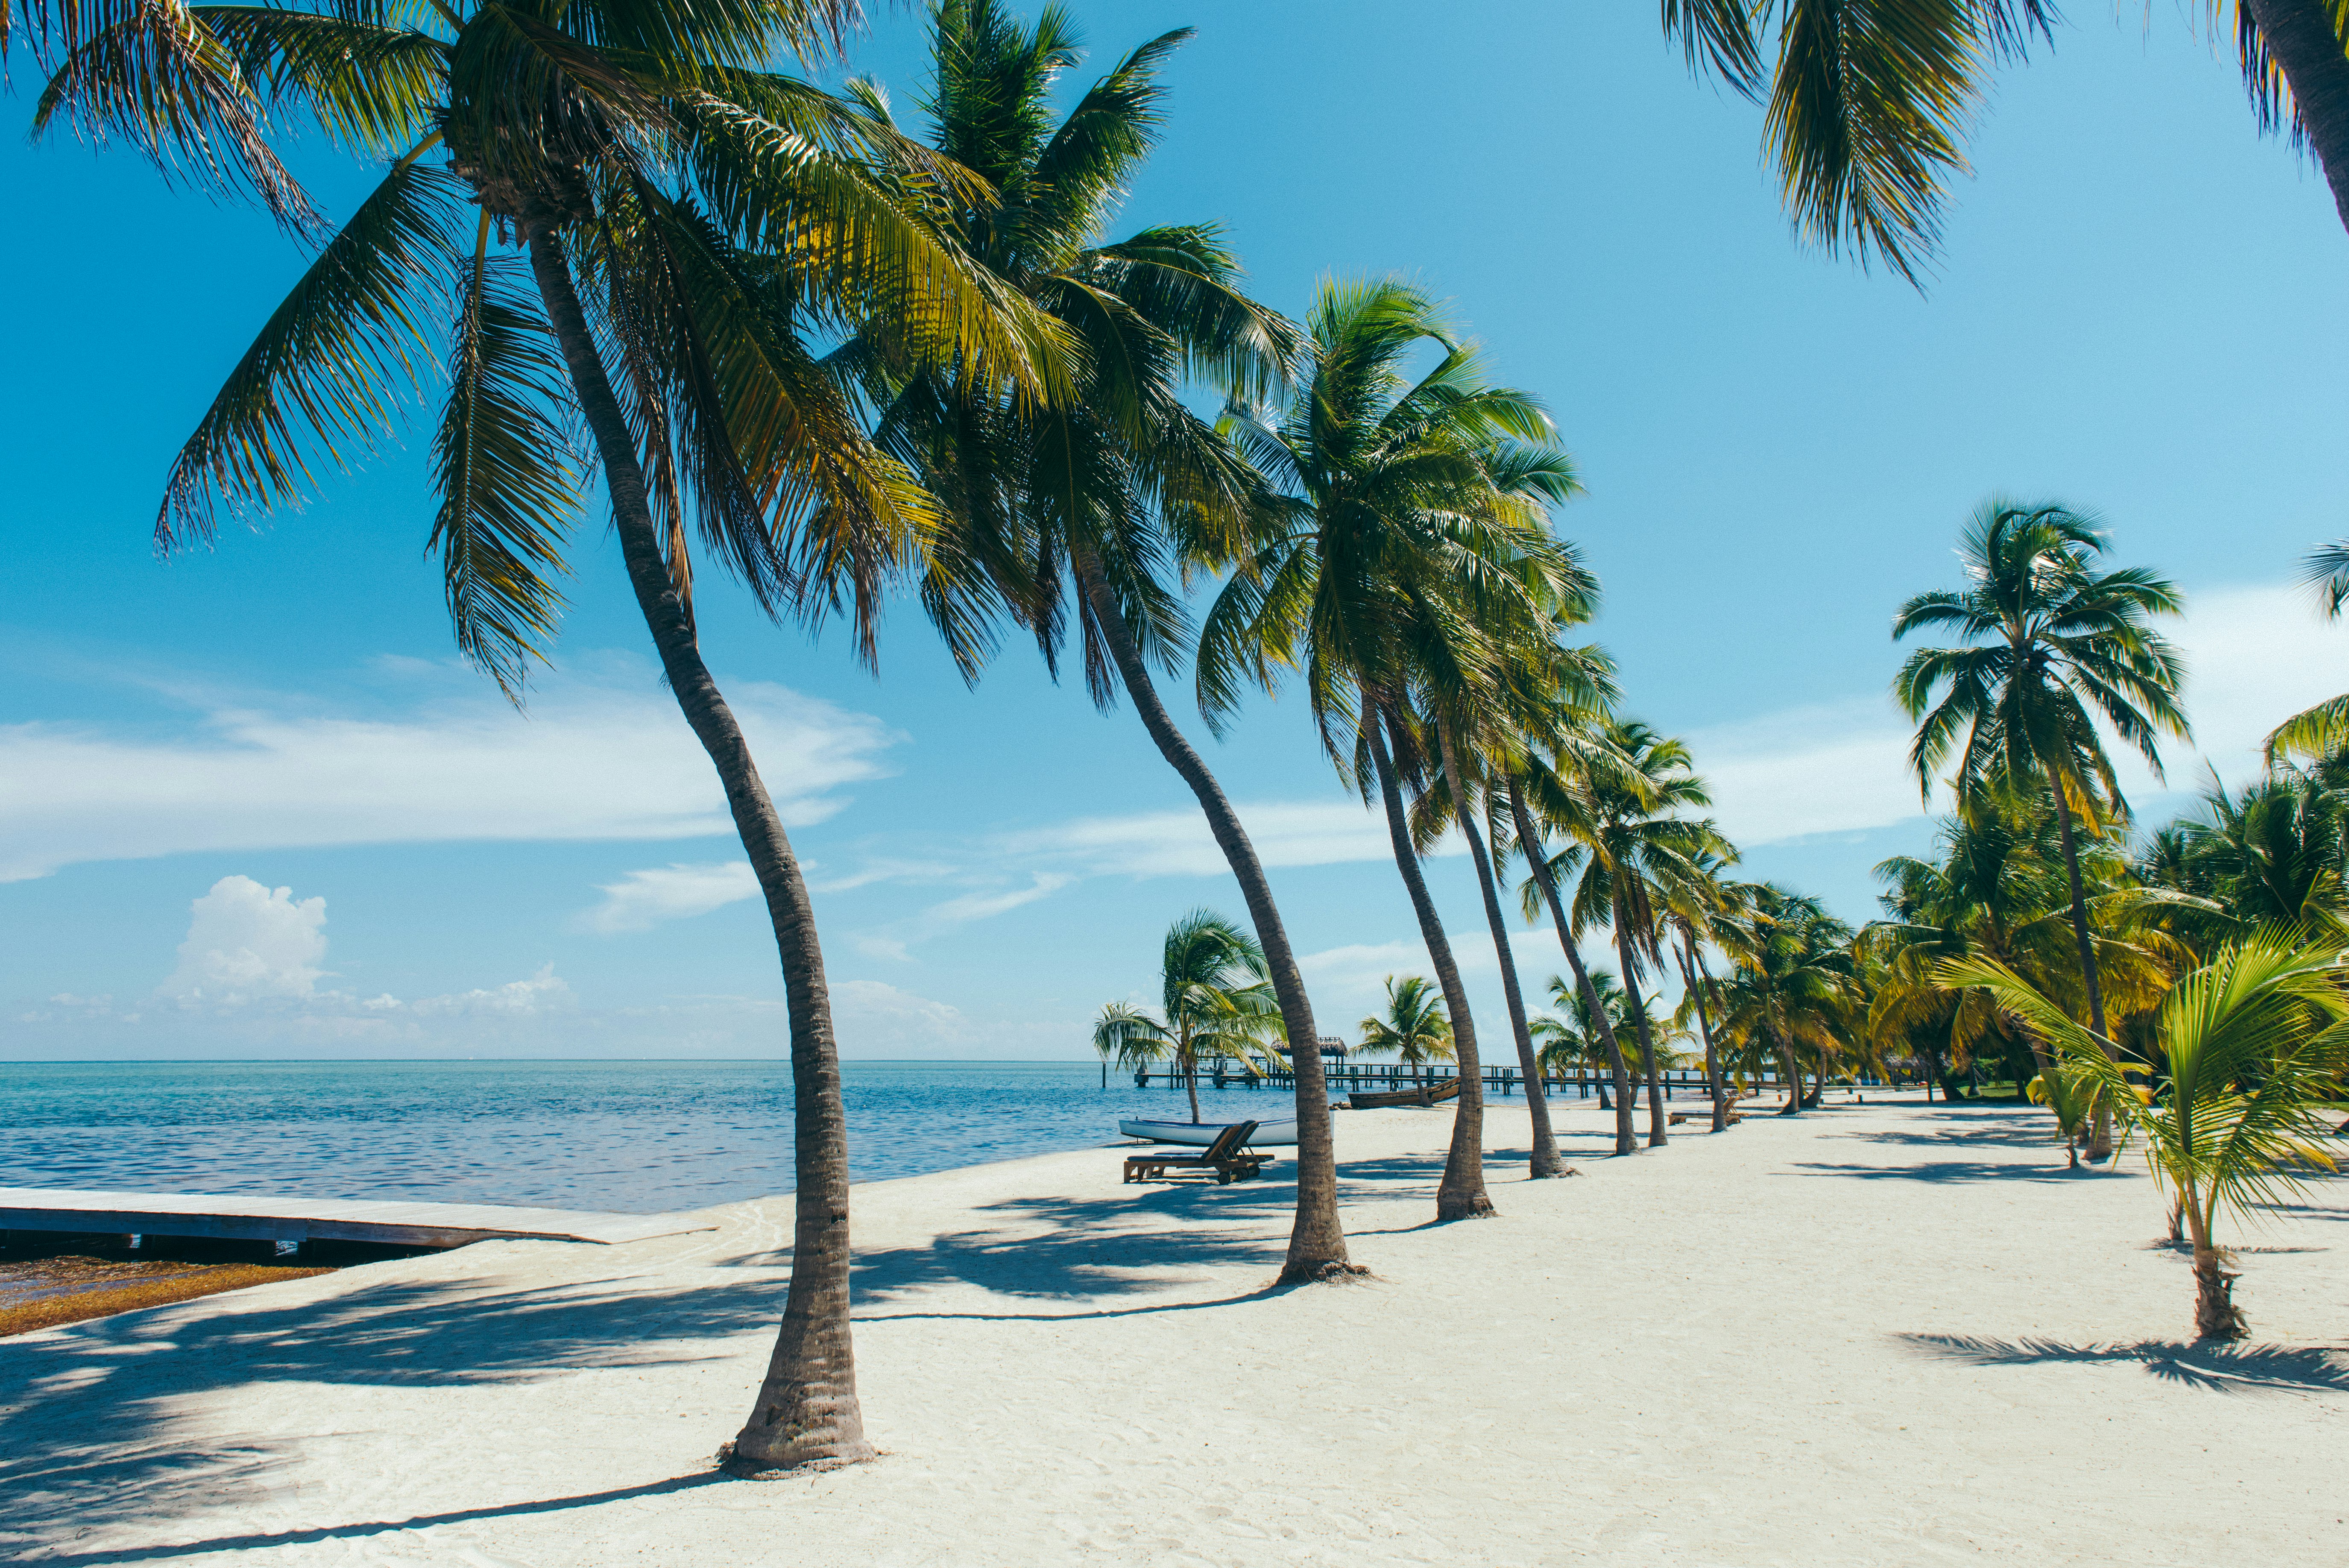 En rad palmer på en fin, vit sandstrand nära turkost vatten med små krusningar - en lugn scen vid stranden i Islamorada, Florida